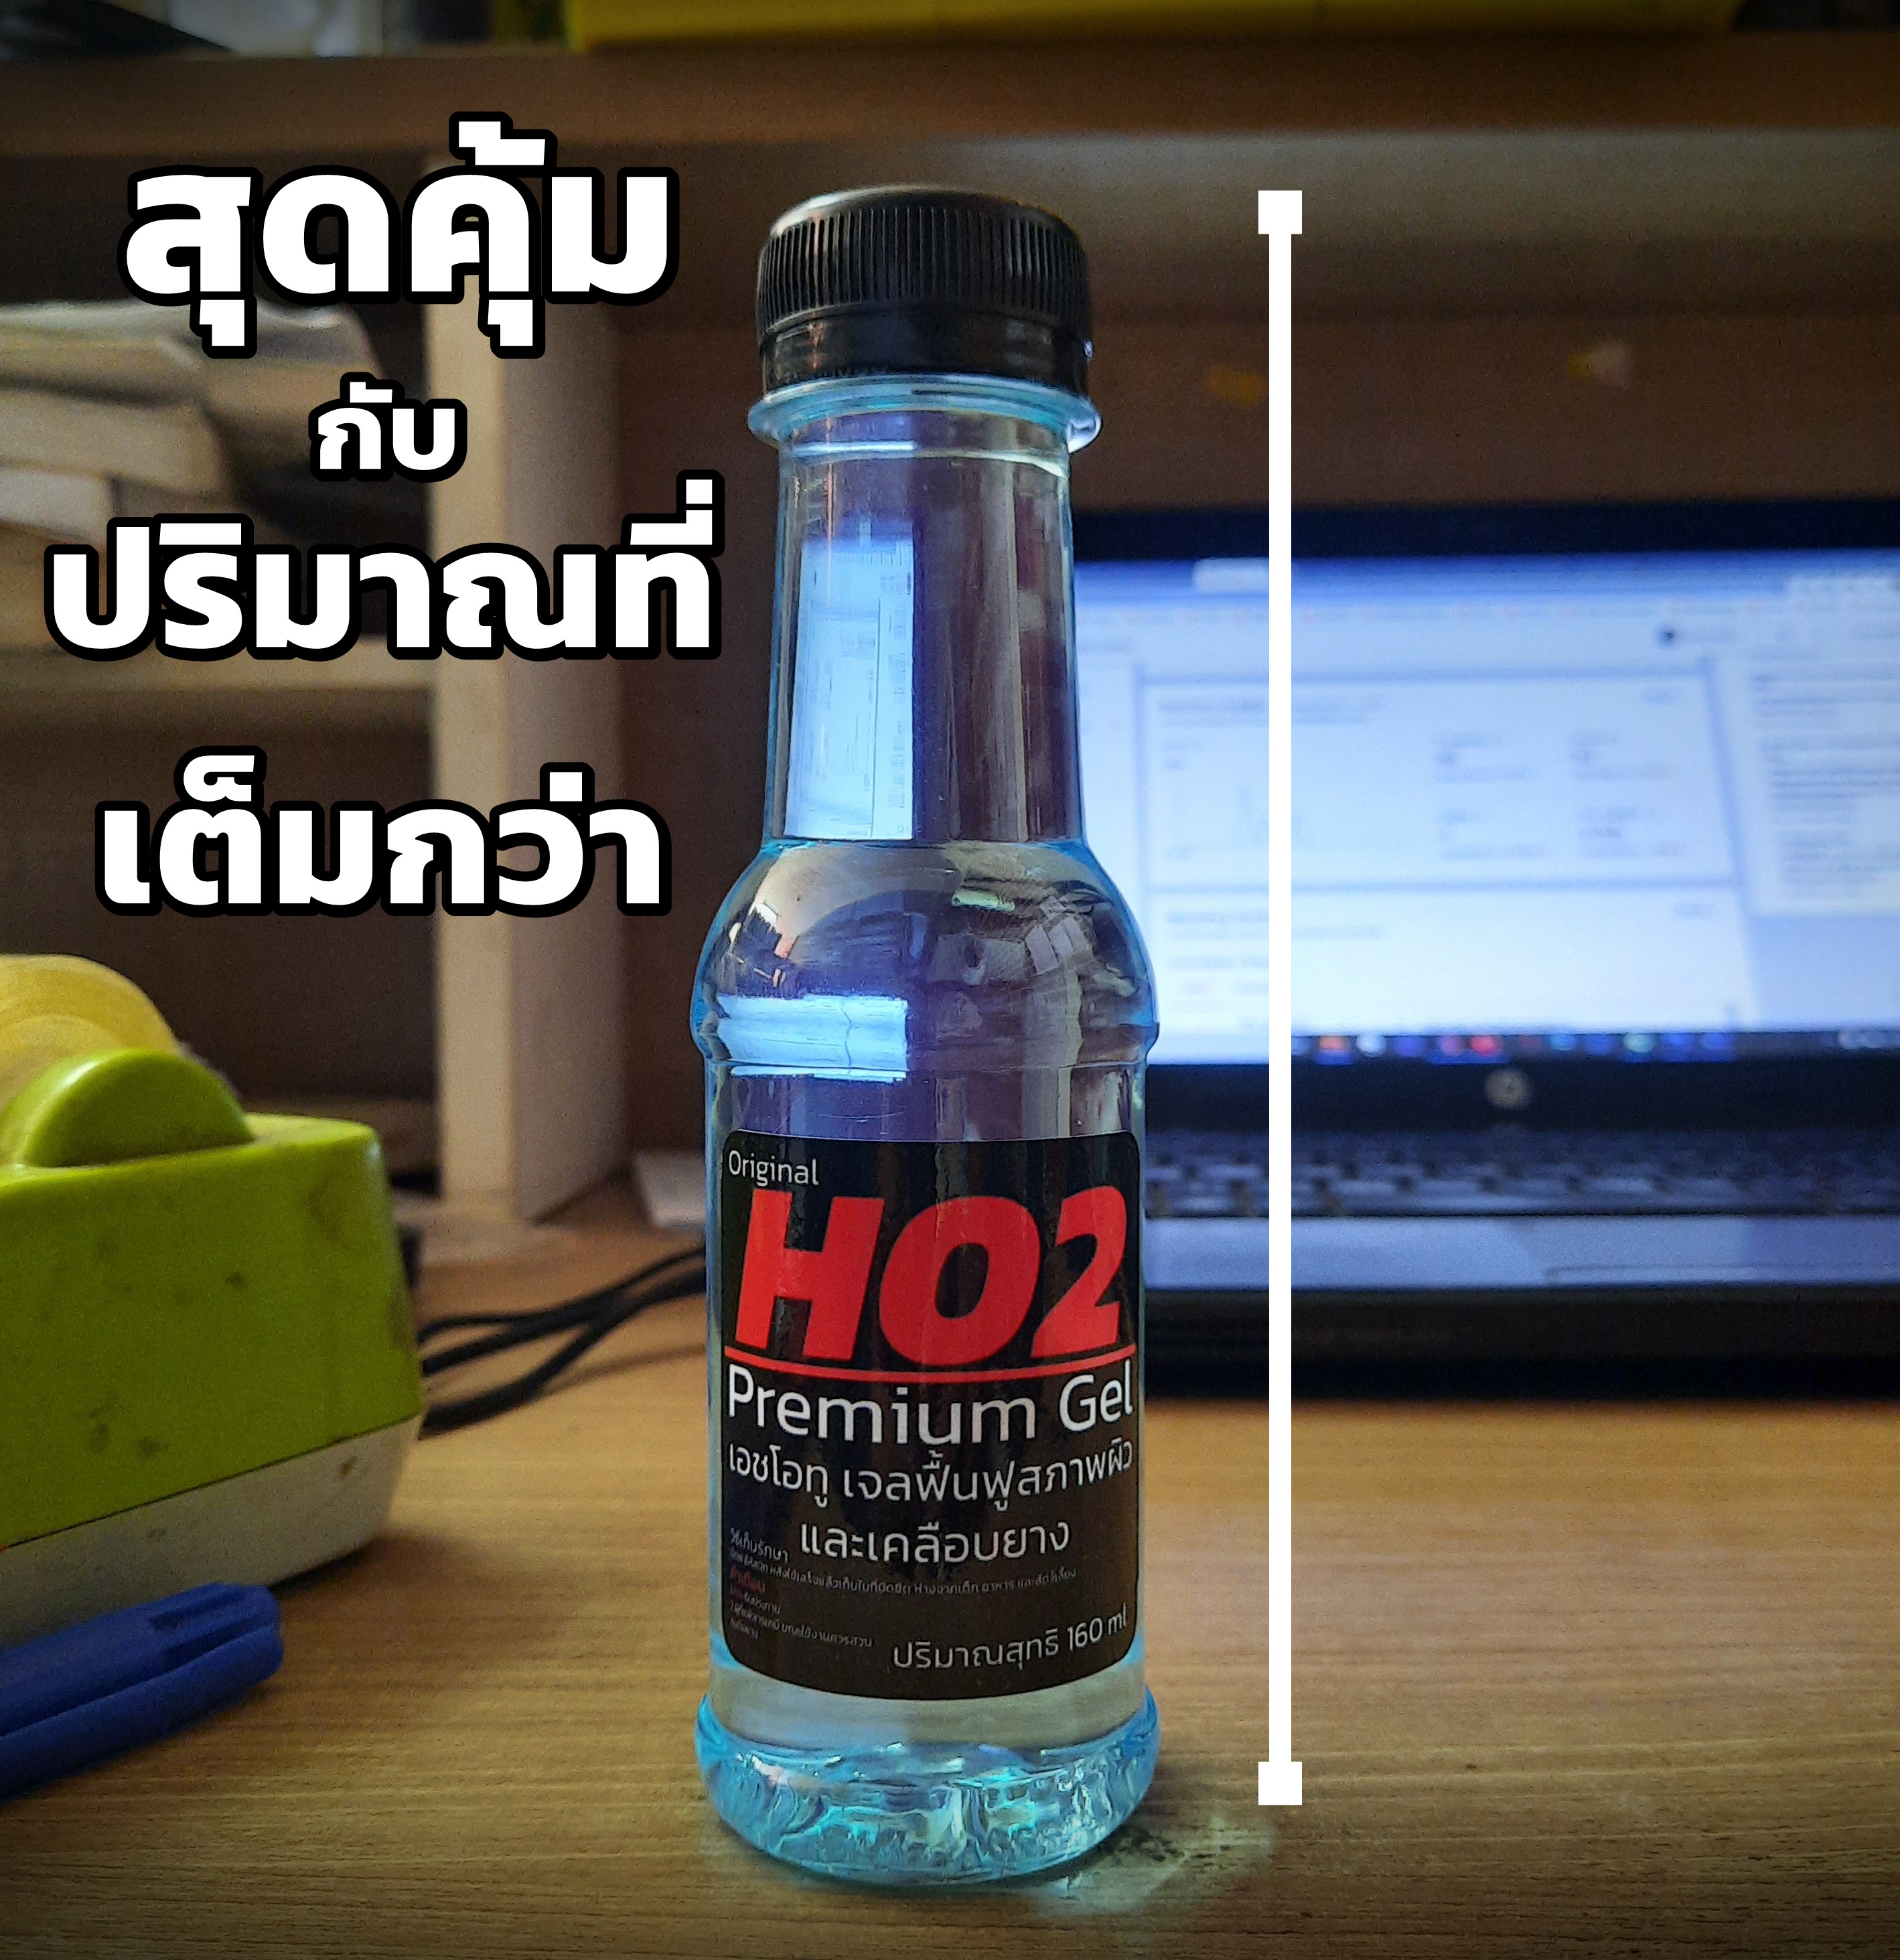 HO2 น้ำยาทายางดำ เจลฟื้นฟูสภาพผิวพลาสติกและทายางดำ ปริมาณ 160 ml.